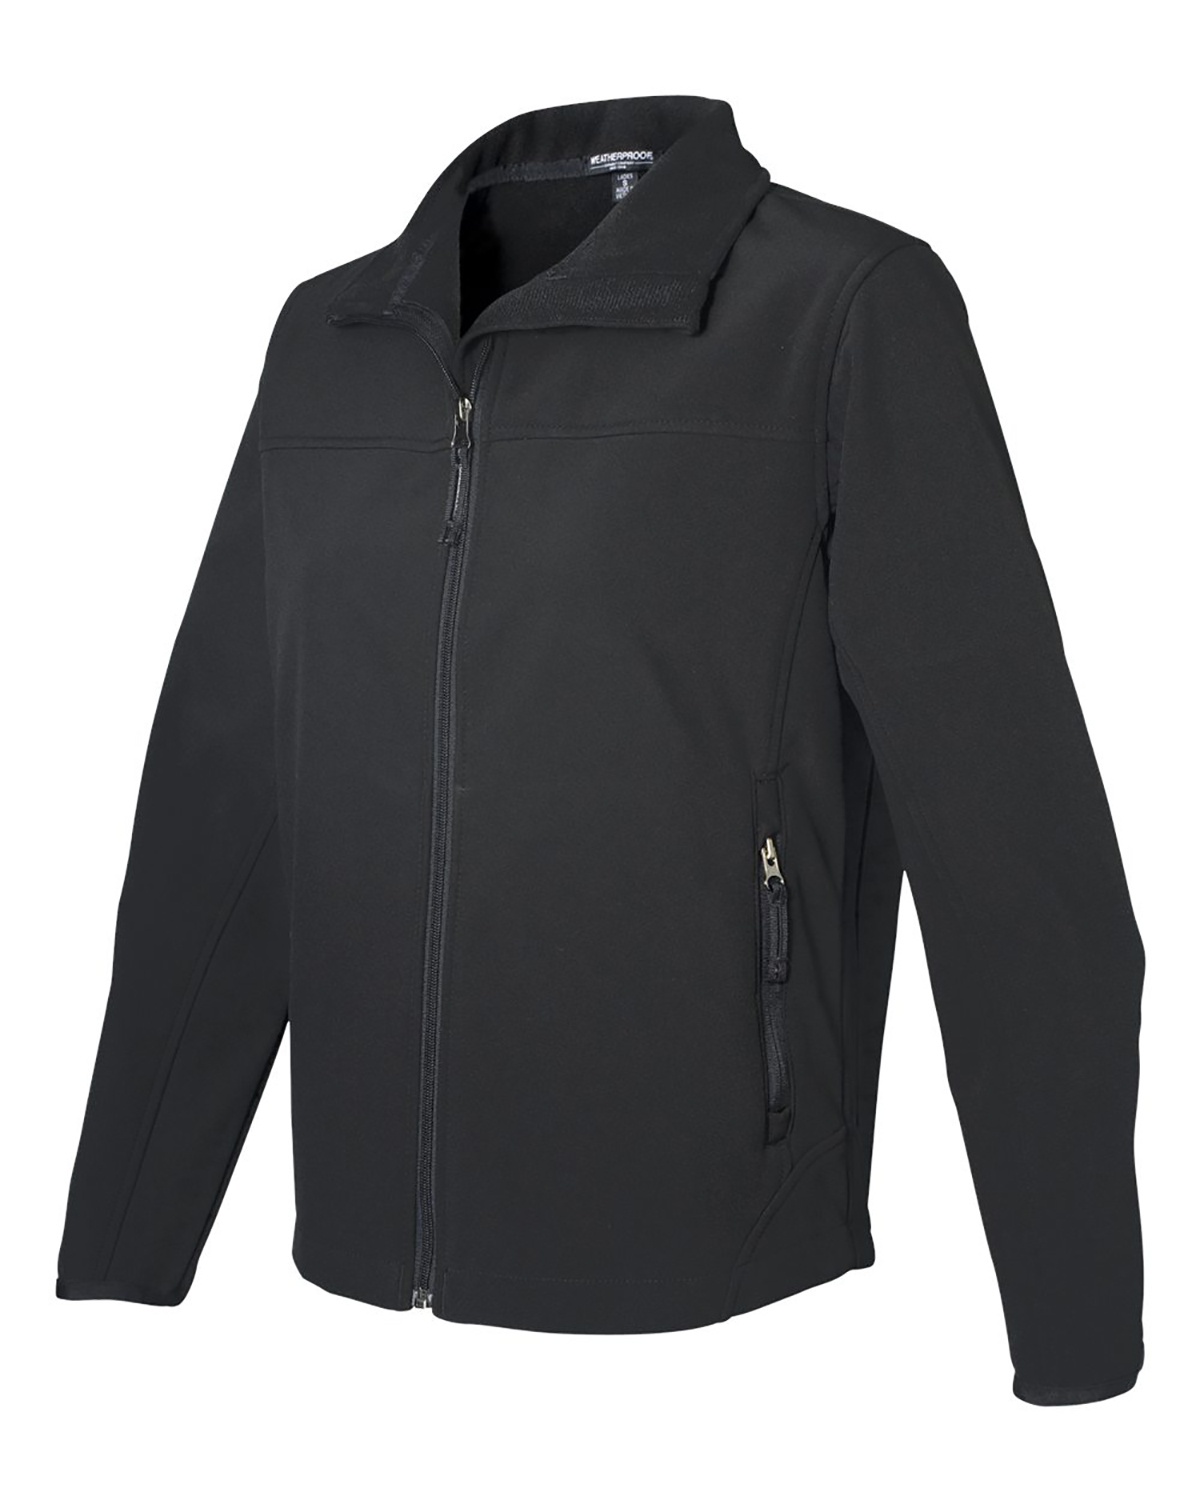 'Weatherproof W6500 Women's Soft Shell Jacket'